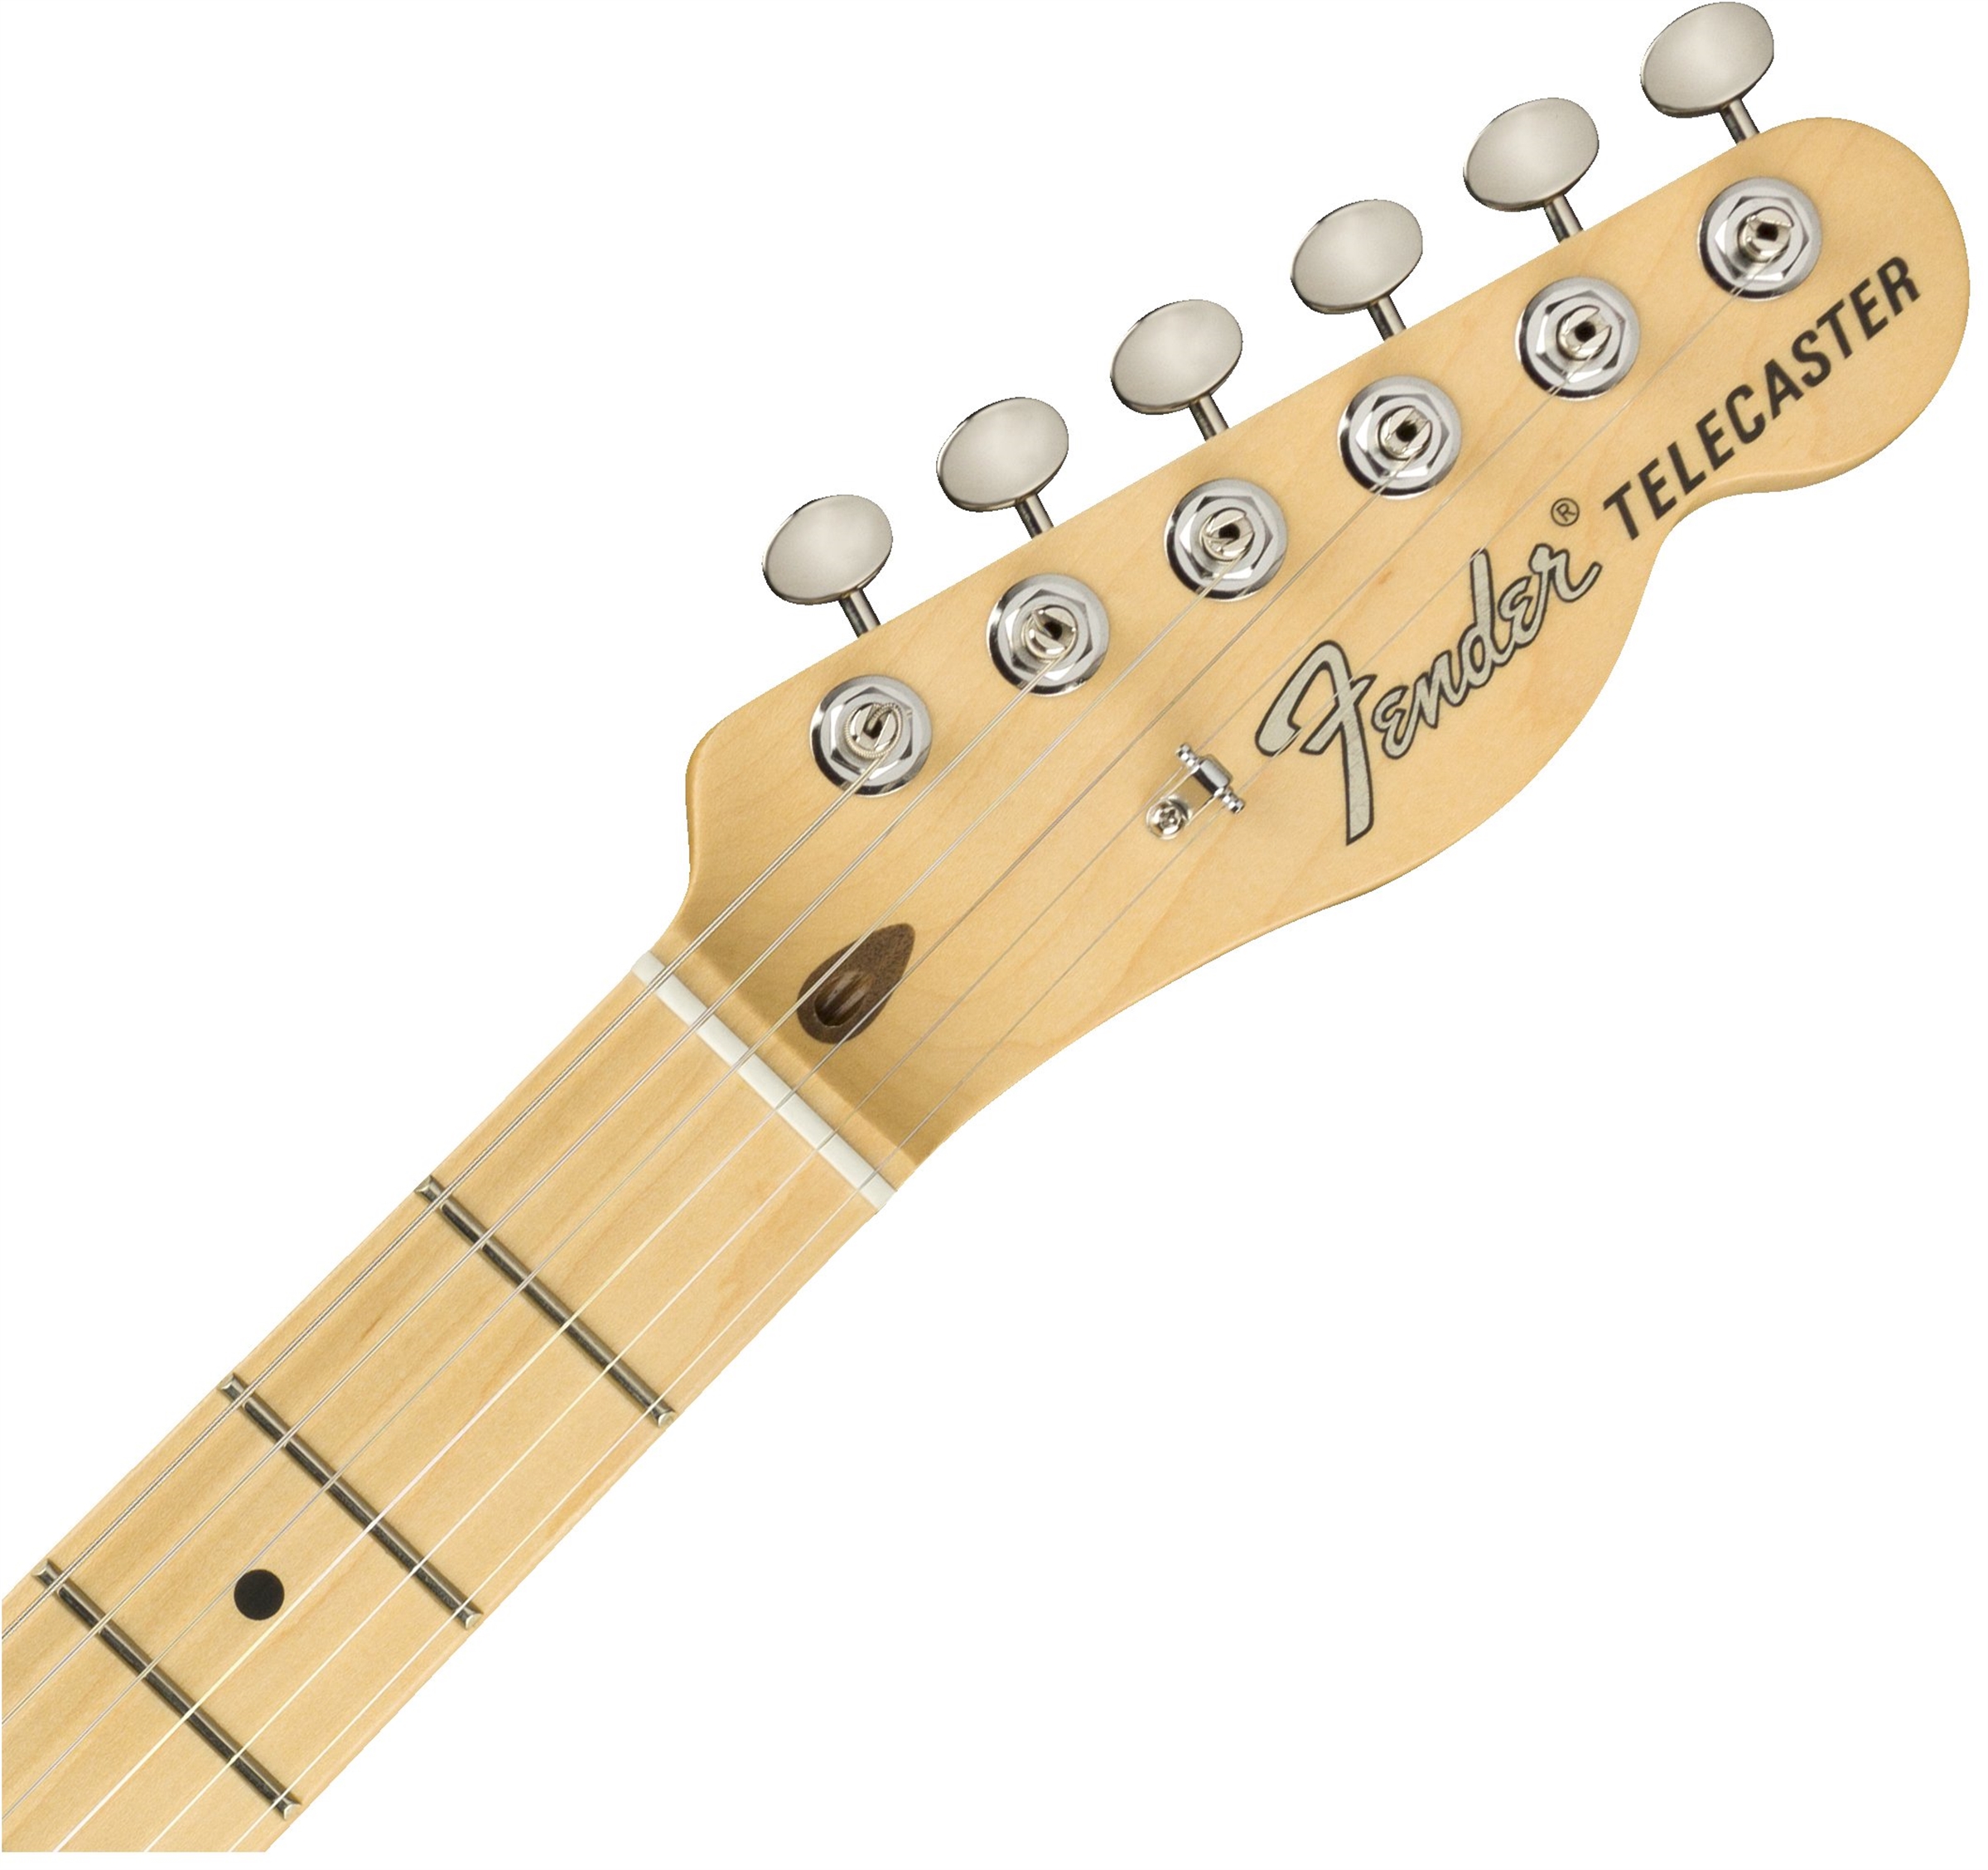 Fender Tele American Performer Usa Mn - Vintage White - E-Gitarre in Teleform - Variation 4